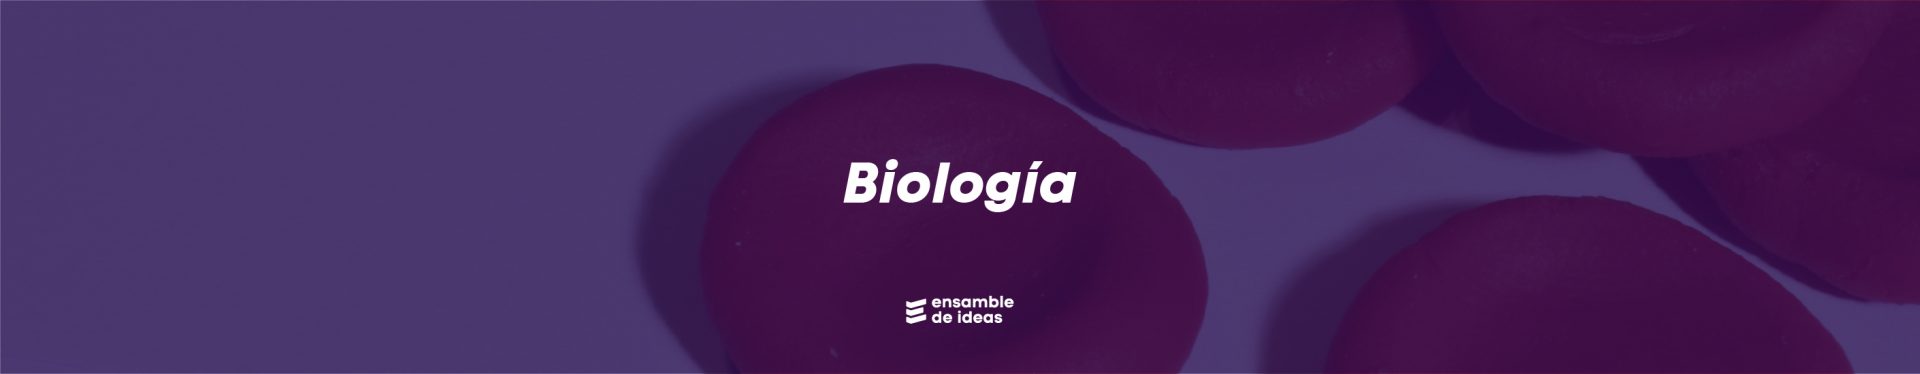 banner biologia